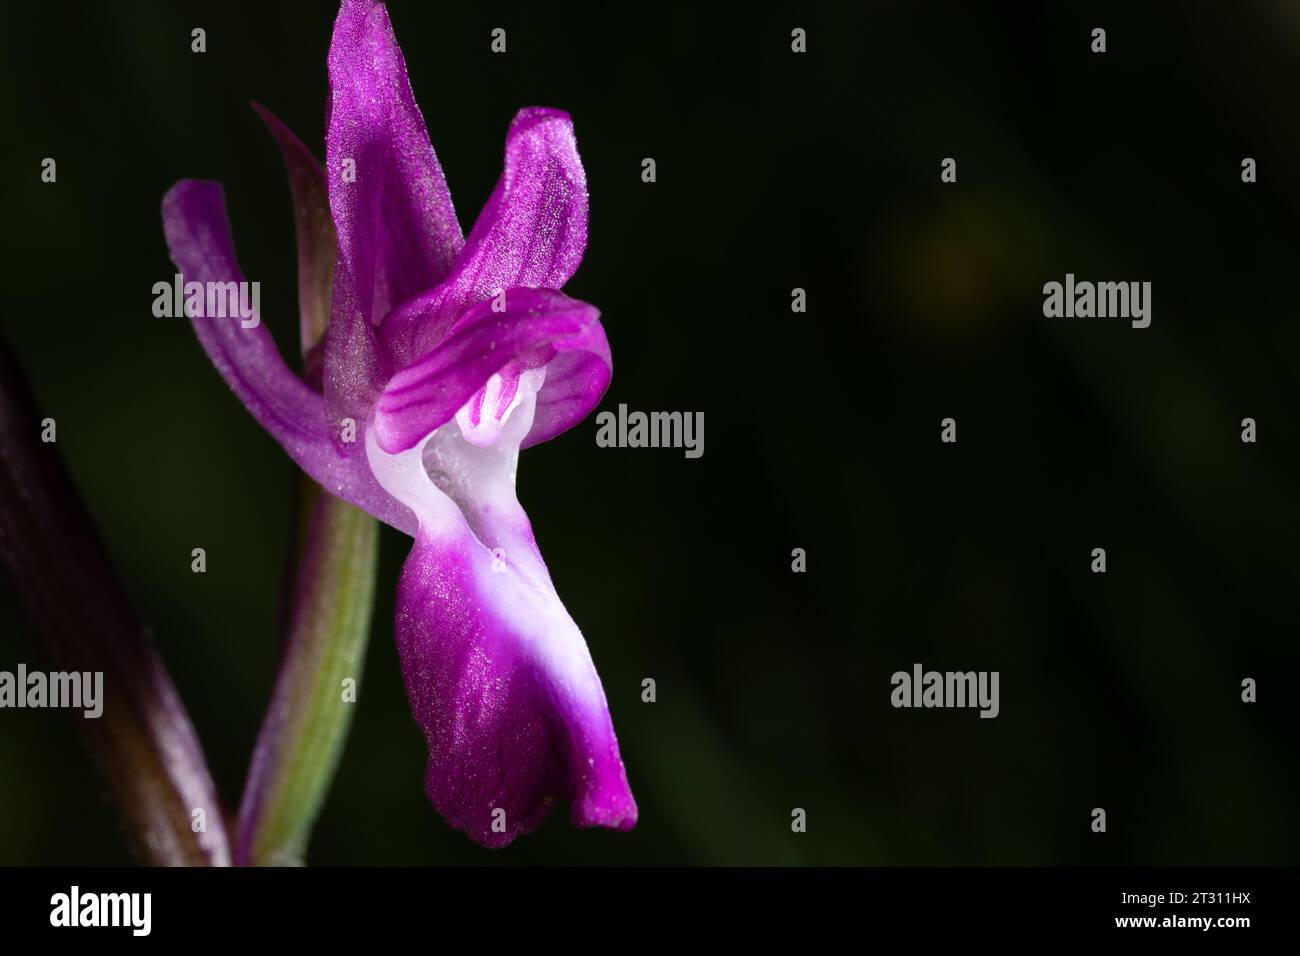 Nahaufnahme einer einzigen Blume der LAX-blühenden Orchidee, aufgenommen in Korfu, Griechenland. Stockfoto